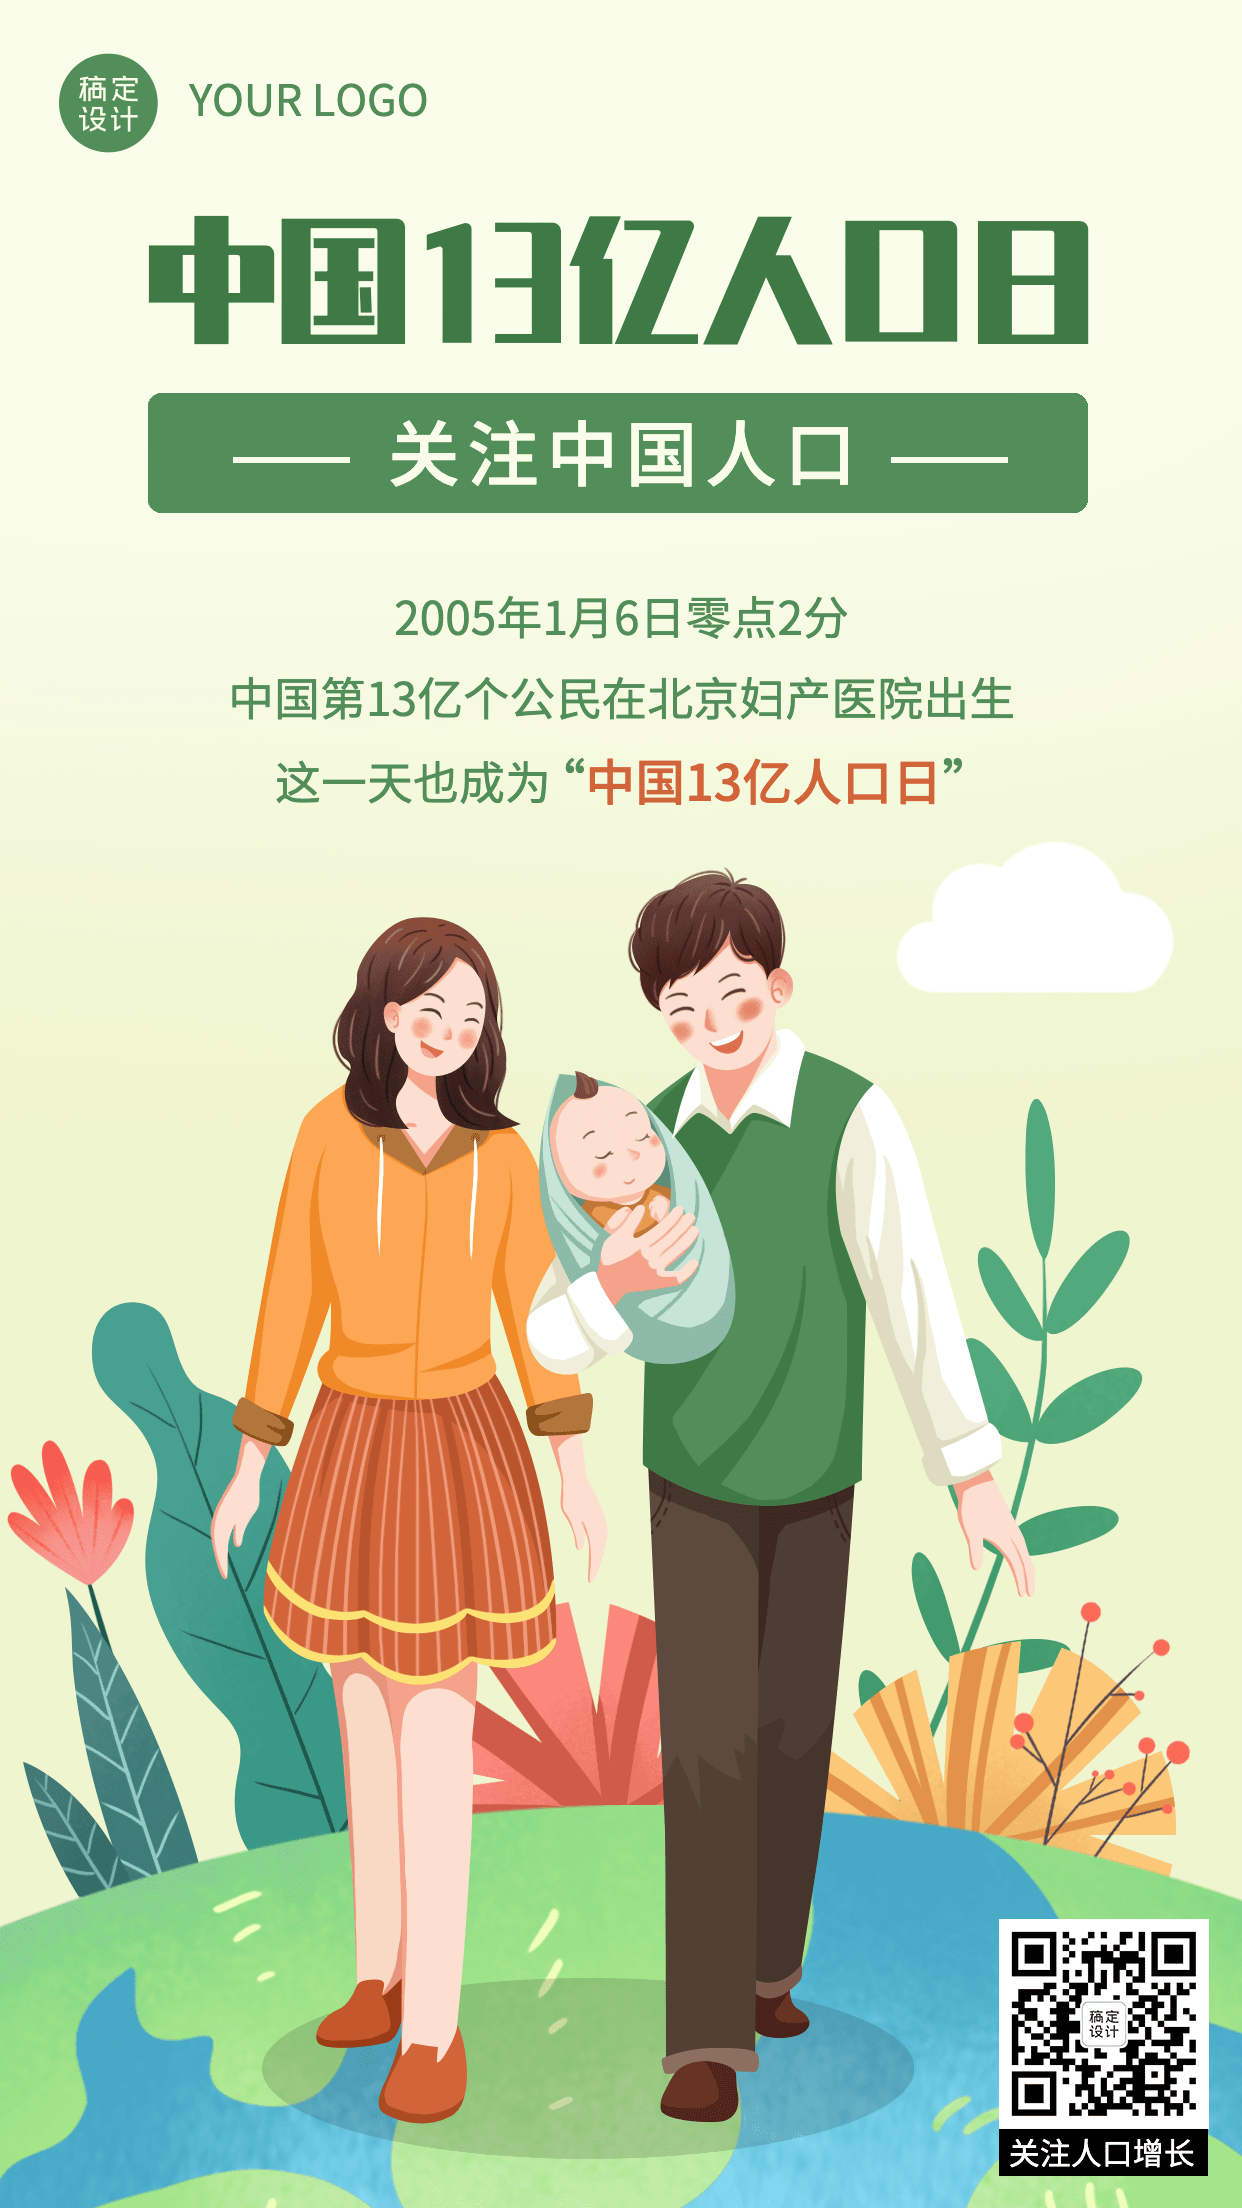 中国13亿人口纪念日节日科普手绘手机海报预览效果